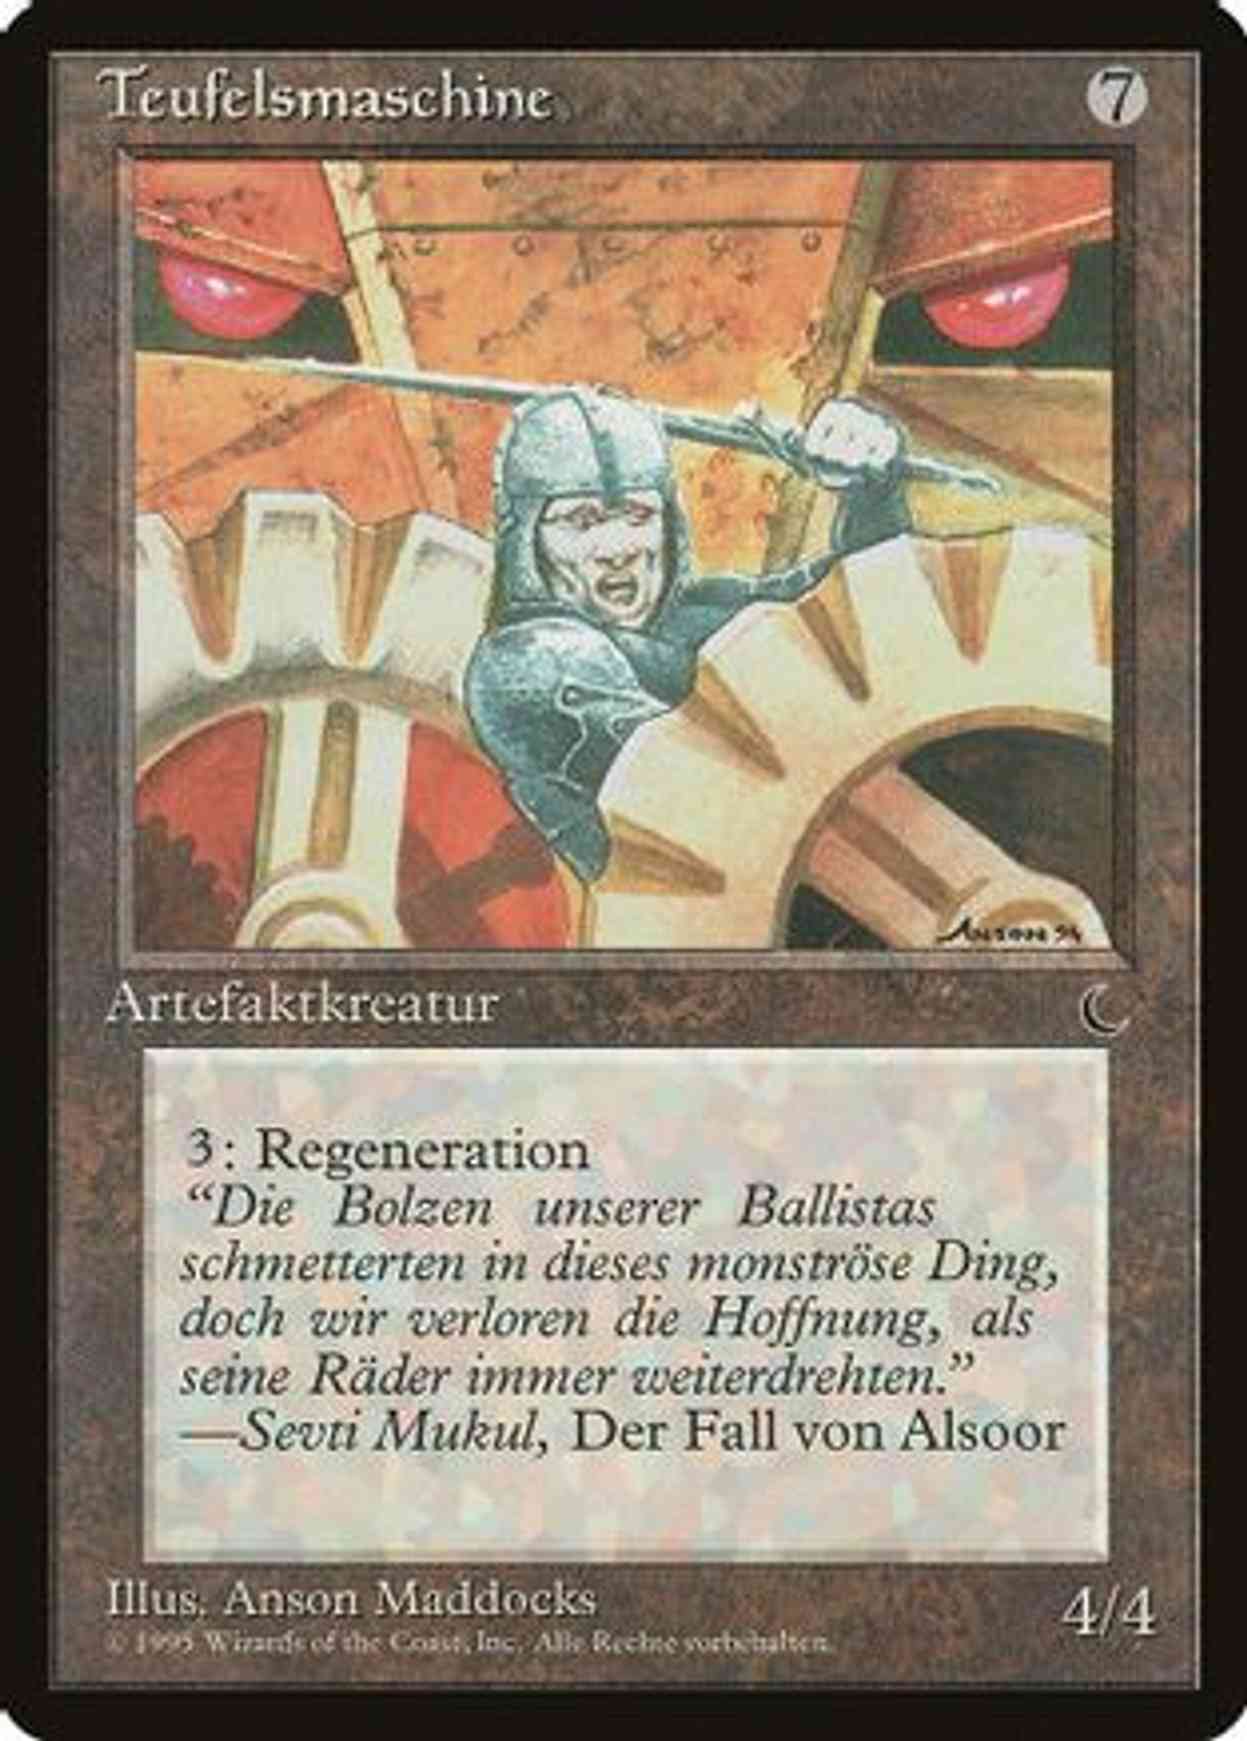 Diabolic Machine (German) - "Teufelsmaschine" magic card front